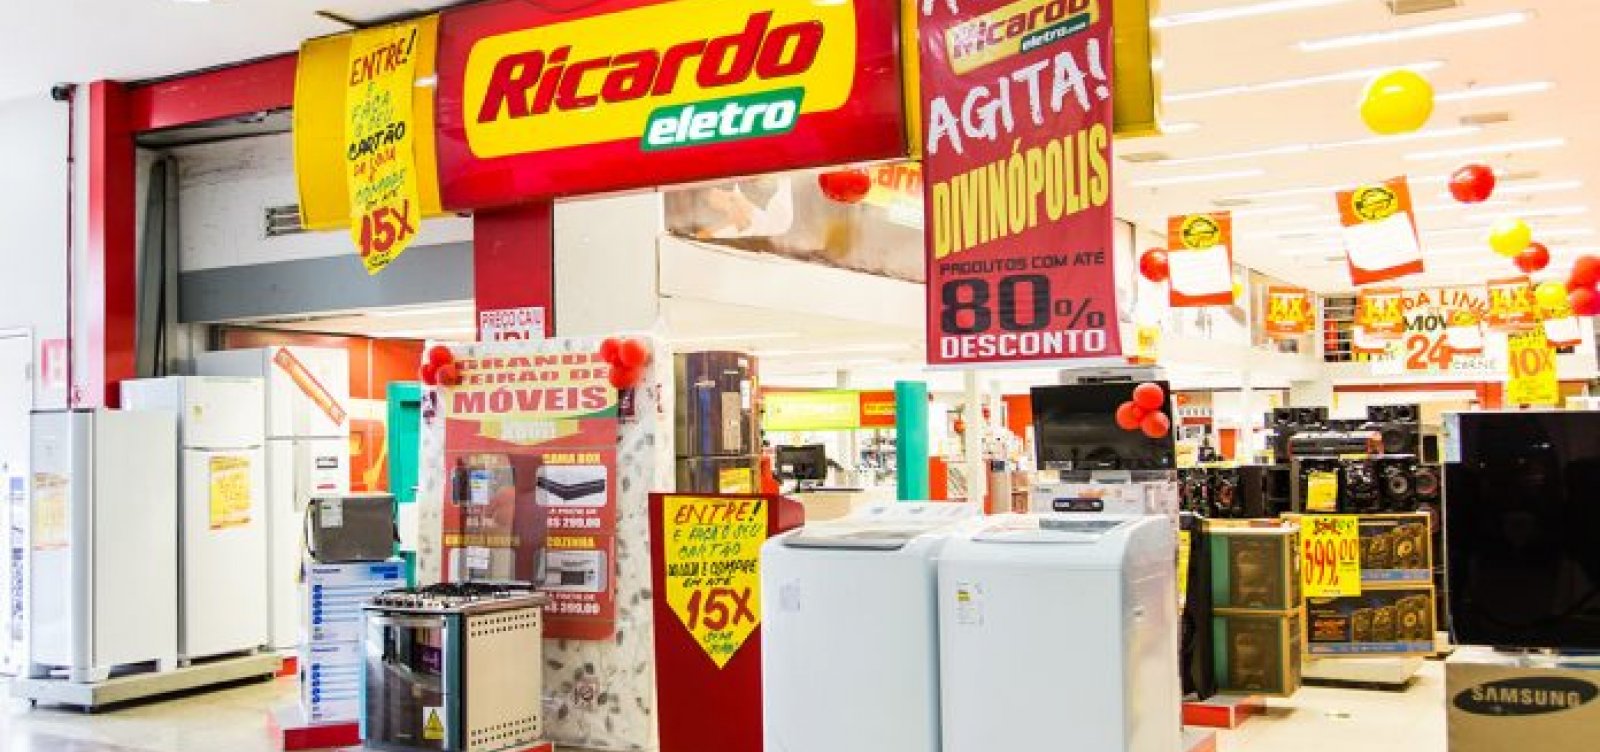 Impactada pela crise, controladora da Ricardo Eletro vai ser vendida 